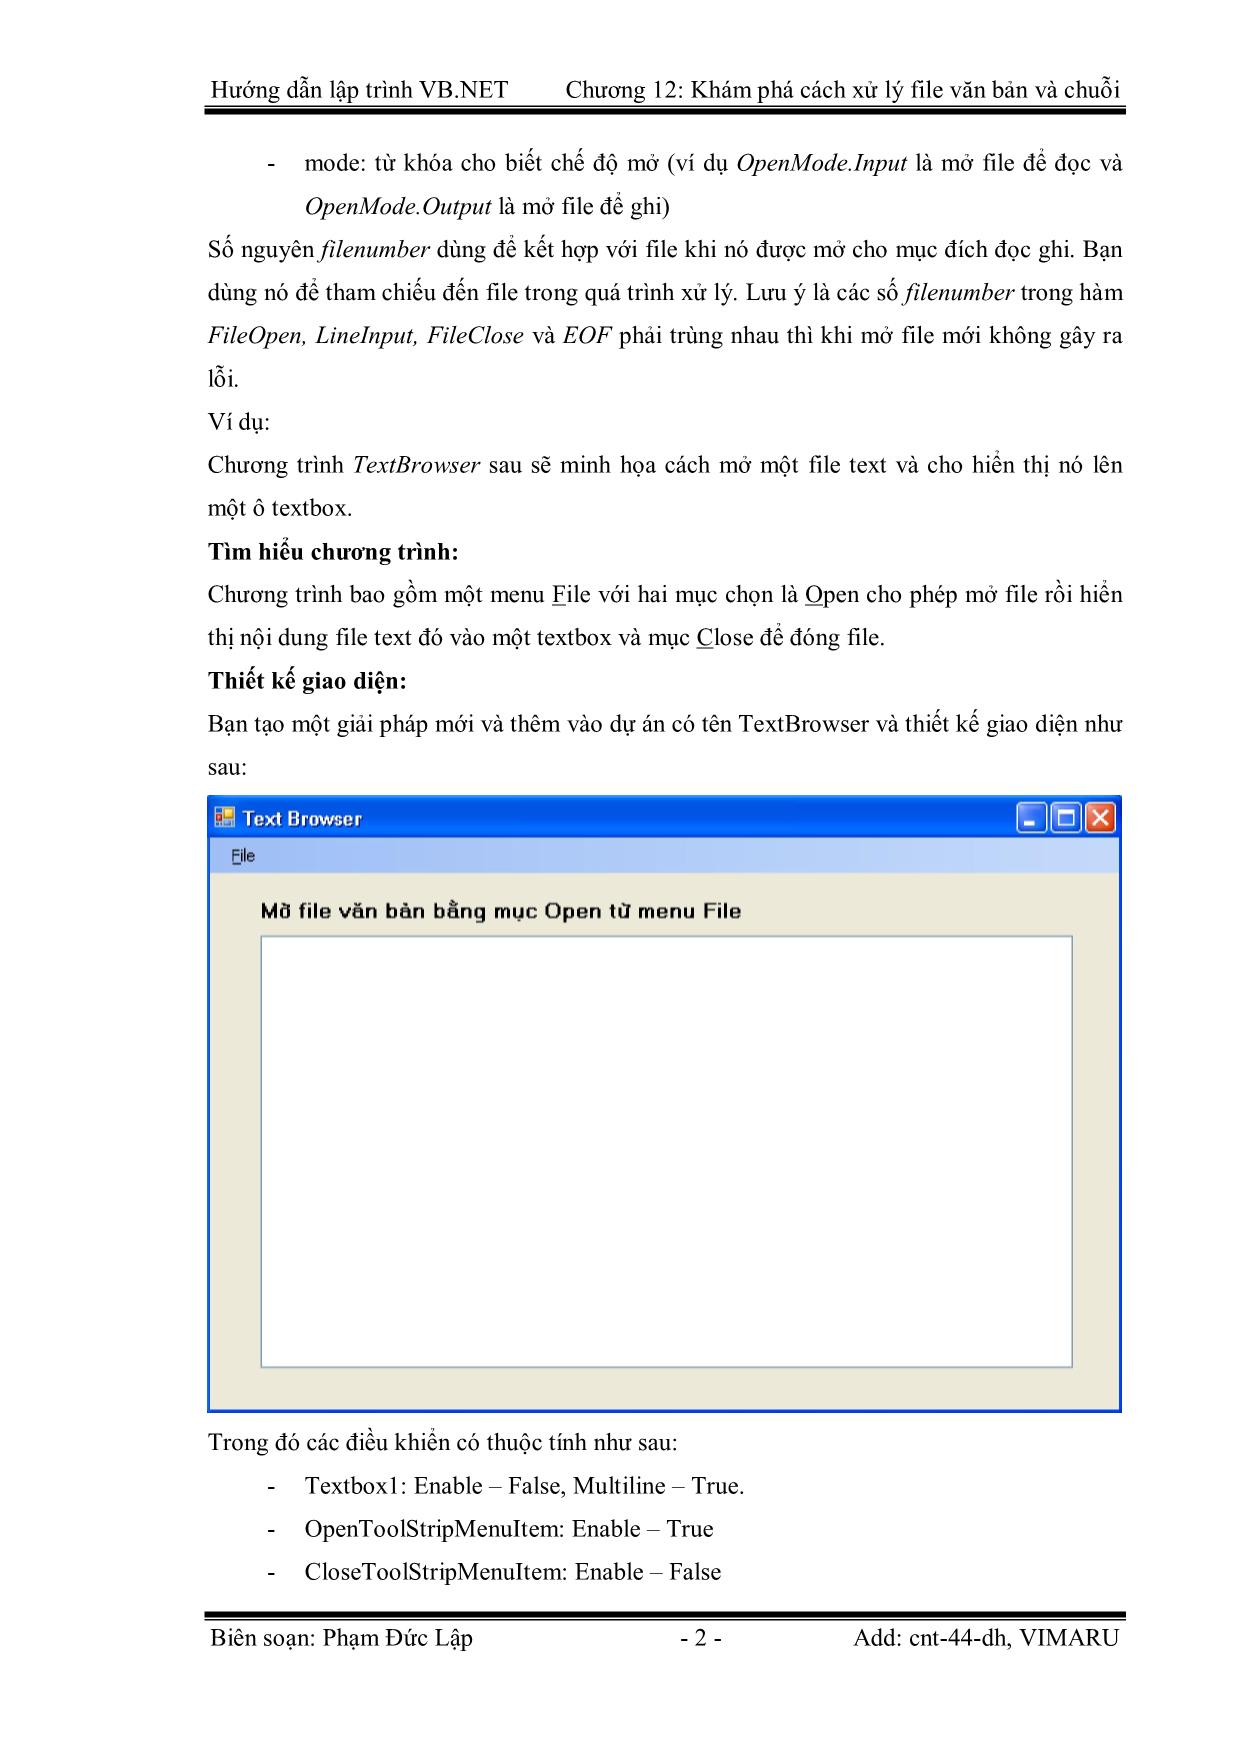 Giáo trình Hướng dẫn lập trình VB.NET - Chương 12: Khám phá cách xử lý File Text và chuỗi - Phạm Đức Lập trang 2